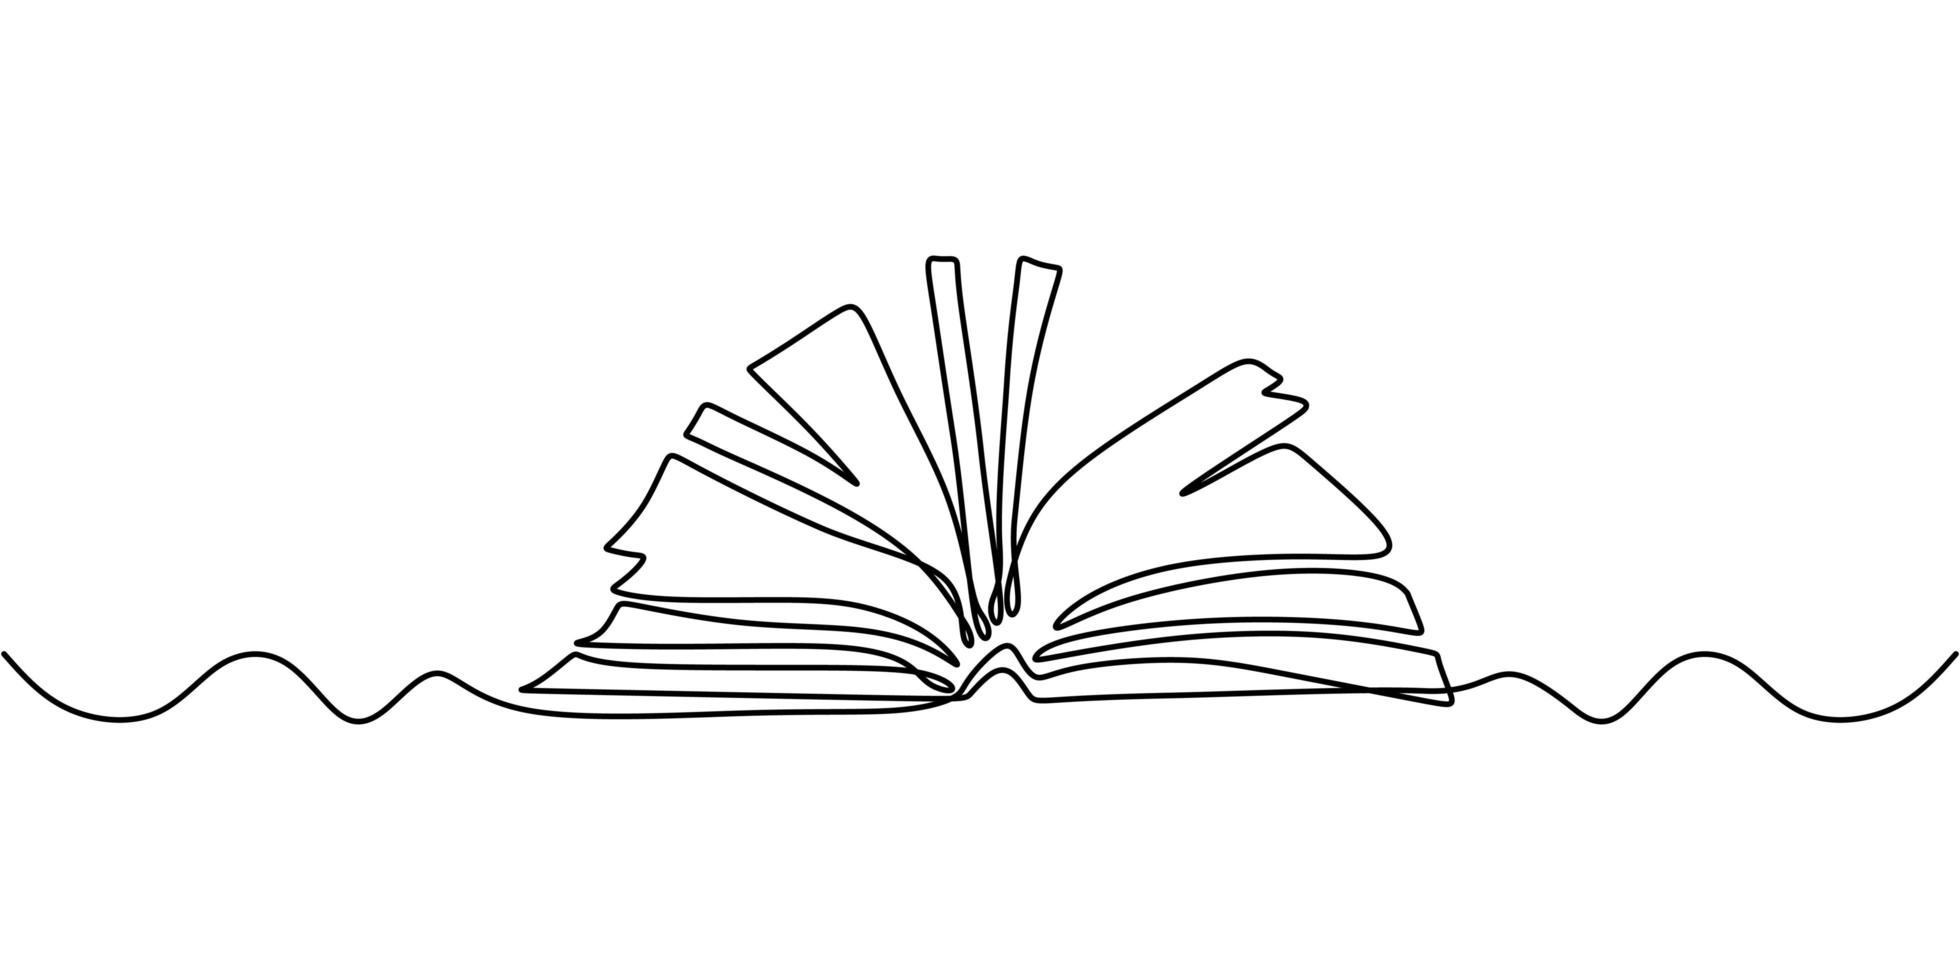 um desenho de linha, livro aberto. ilustração do objeto vetorial, design de esboço desenhado de mão minimalismo. conceito de estudo e conhecimento. vetor